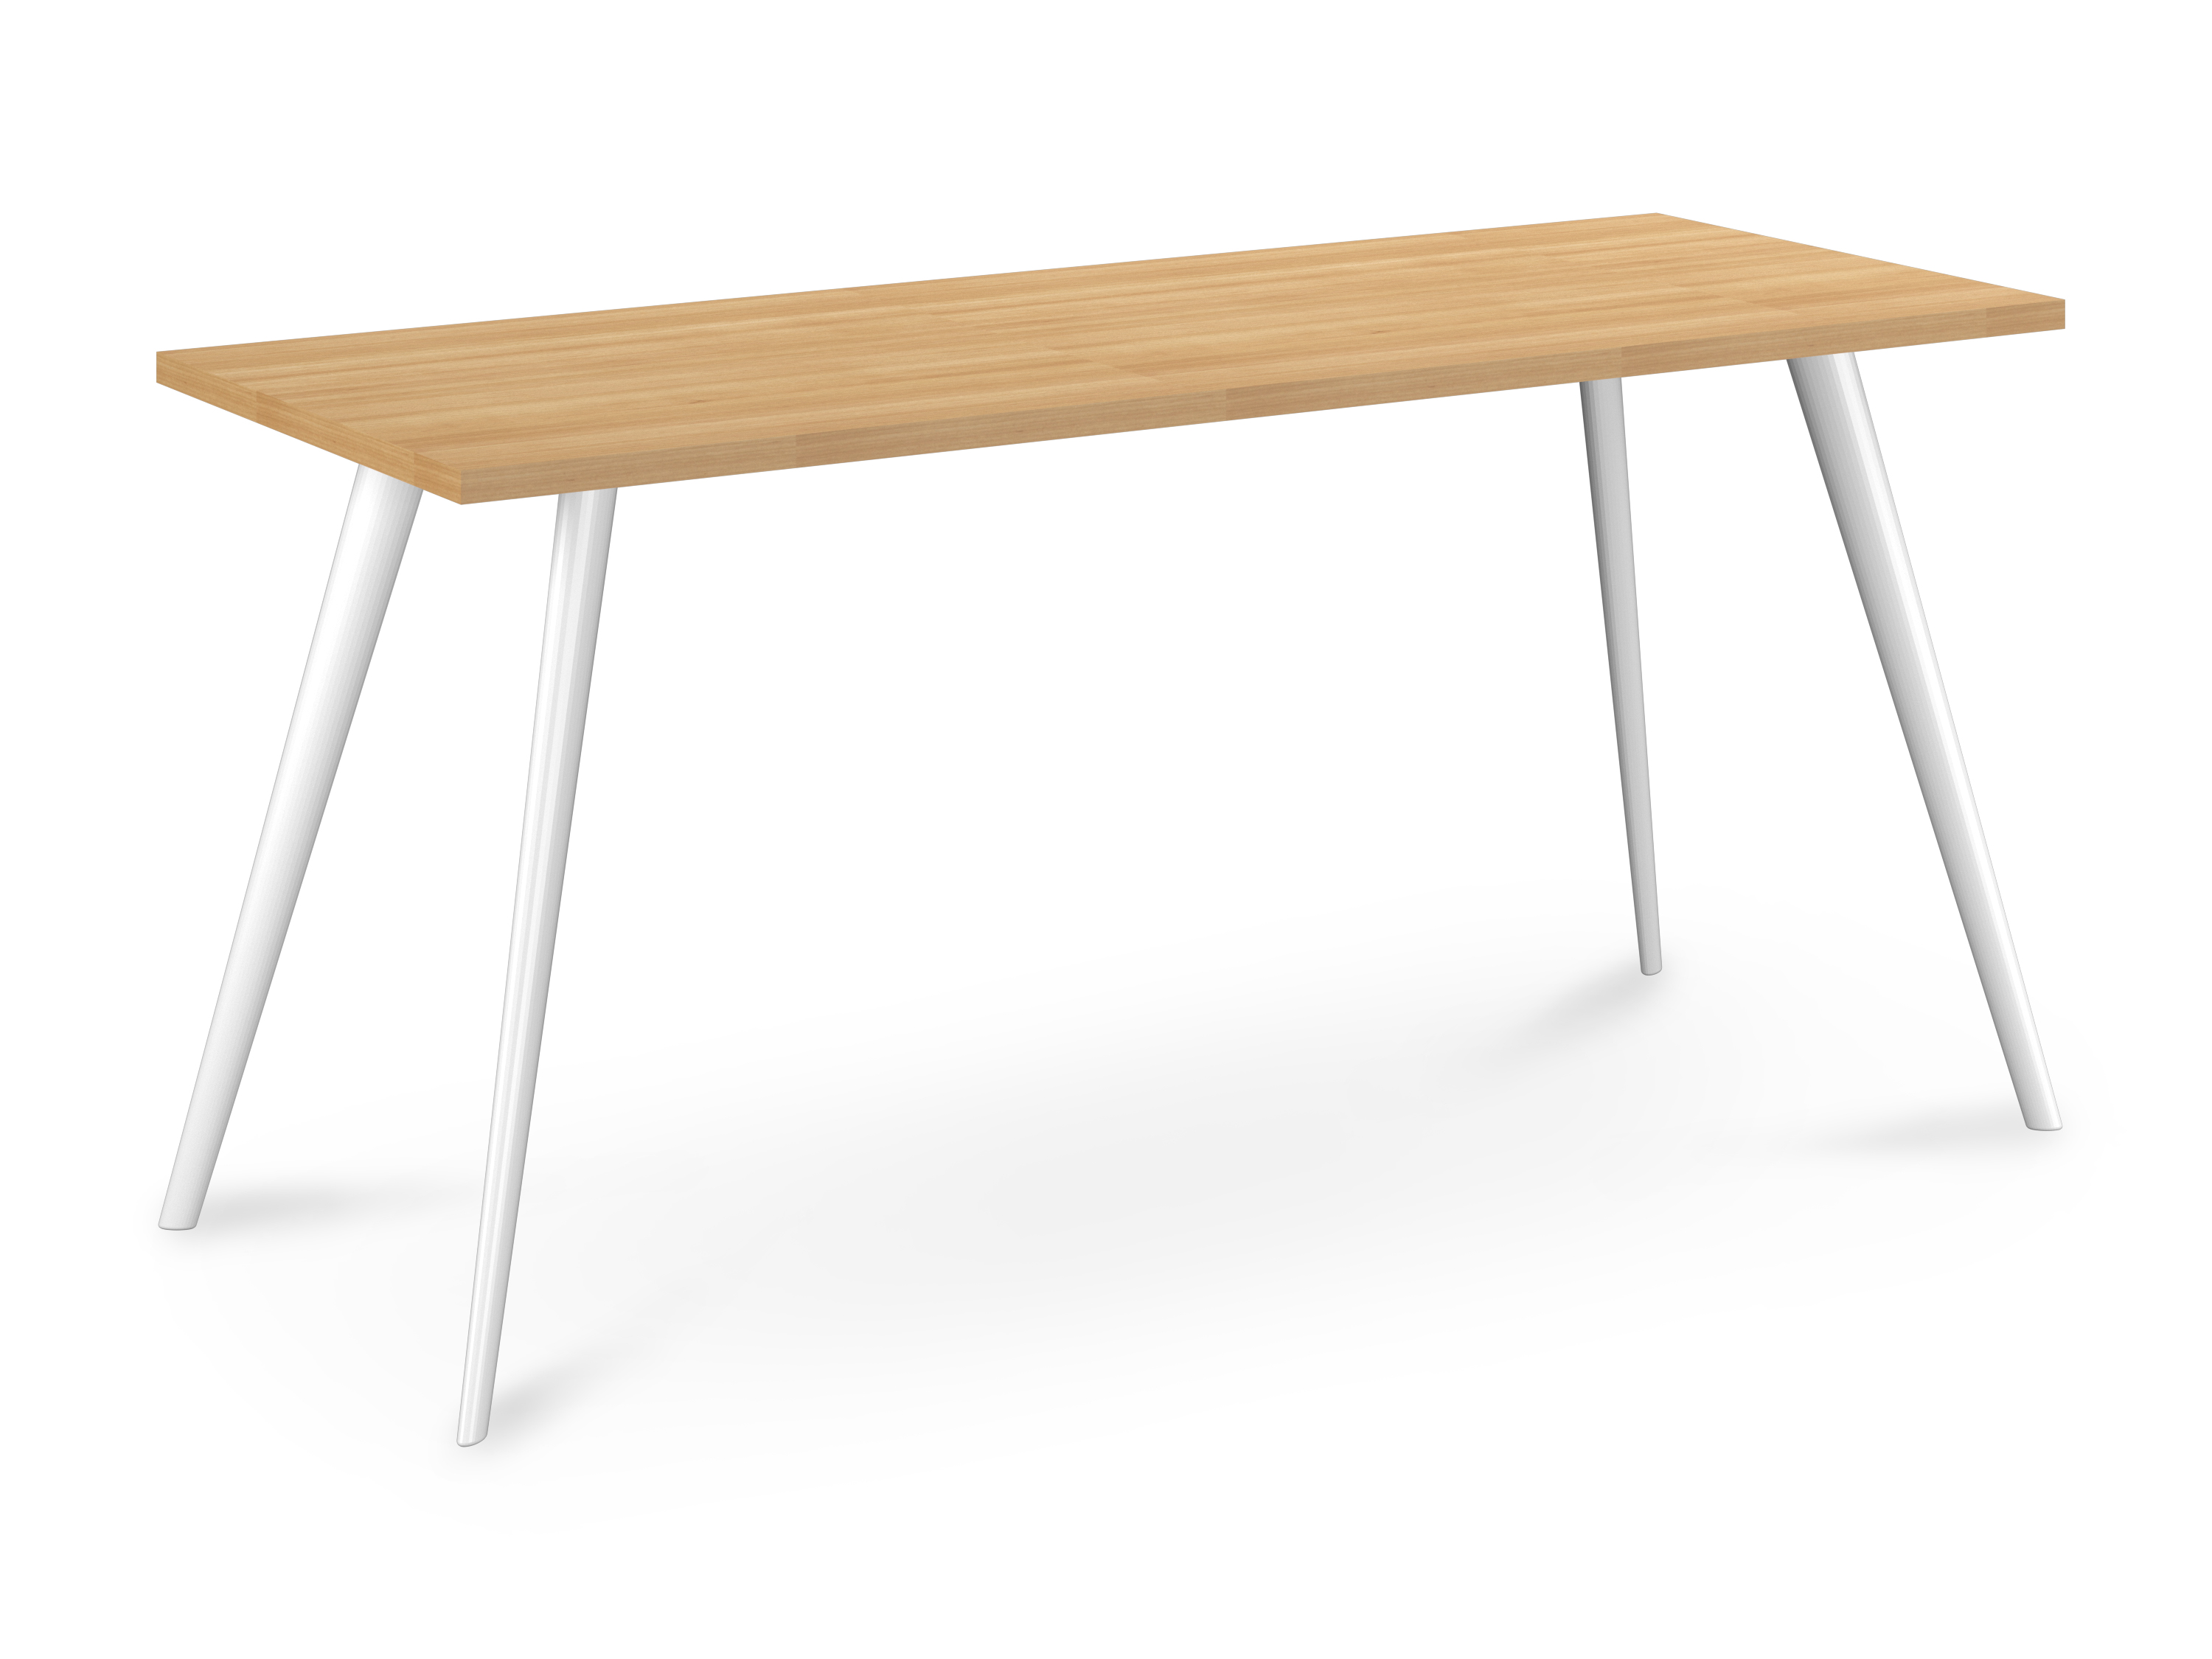 WS - Air desk - White legs, Maple